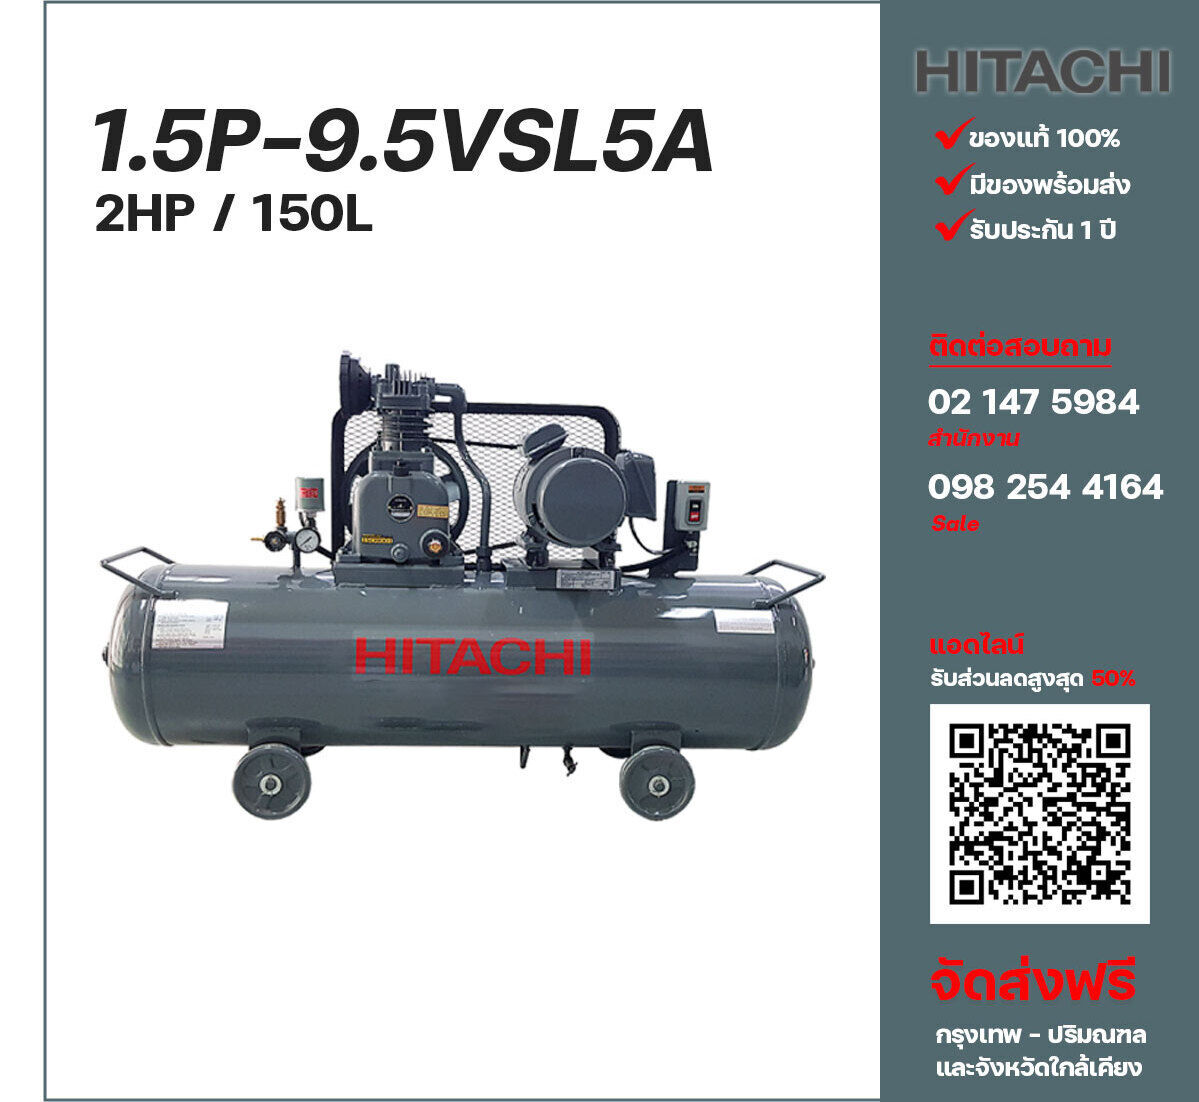 ปั๊มลมฮิตาชิ HITACHI รุ่นใช้น้ำมัน 1.5P-9.5VSL5A220V ปั๊มลมลูกสูบ ขนาด 1 สูบ 2 แรงม้า 150 ลิตร Hitachi พร้อมมอเตอร์ Hitachi ไฟ 220V ส่งฟรี กรุงเทพฯ-ปริมณฑล รับประกัน 1 ปี